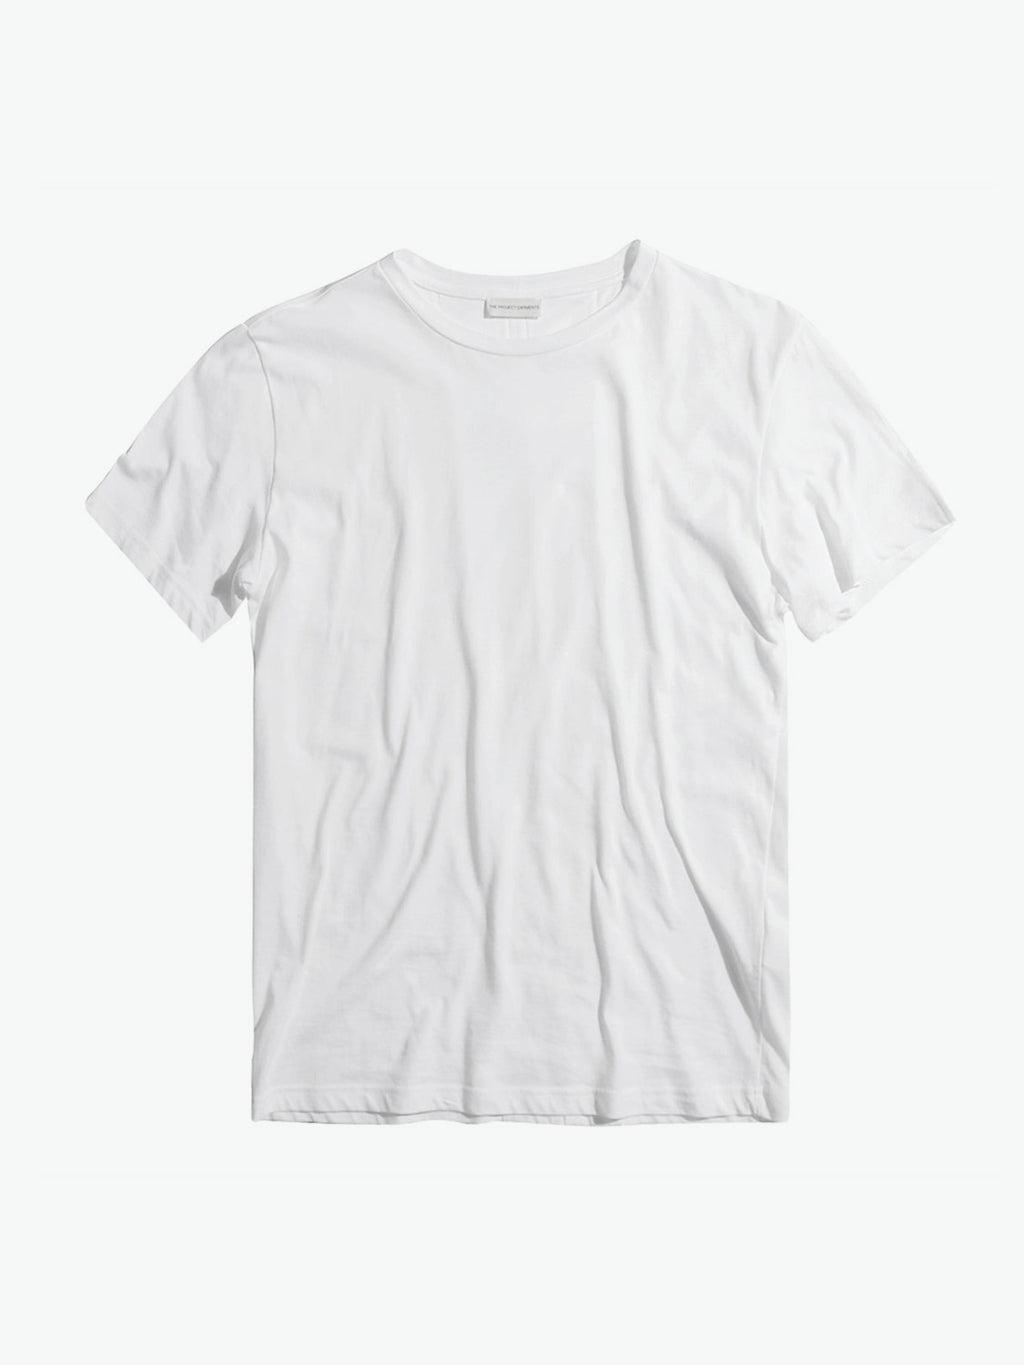 Band V2 Crew Neck T-Shirt White | A